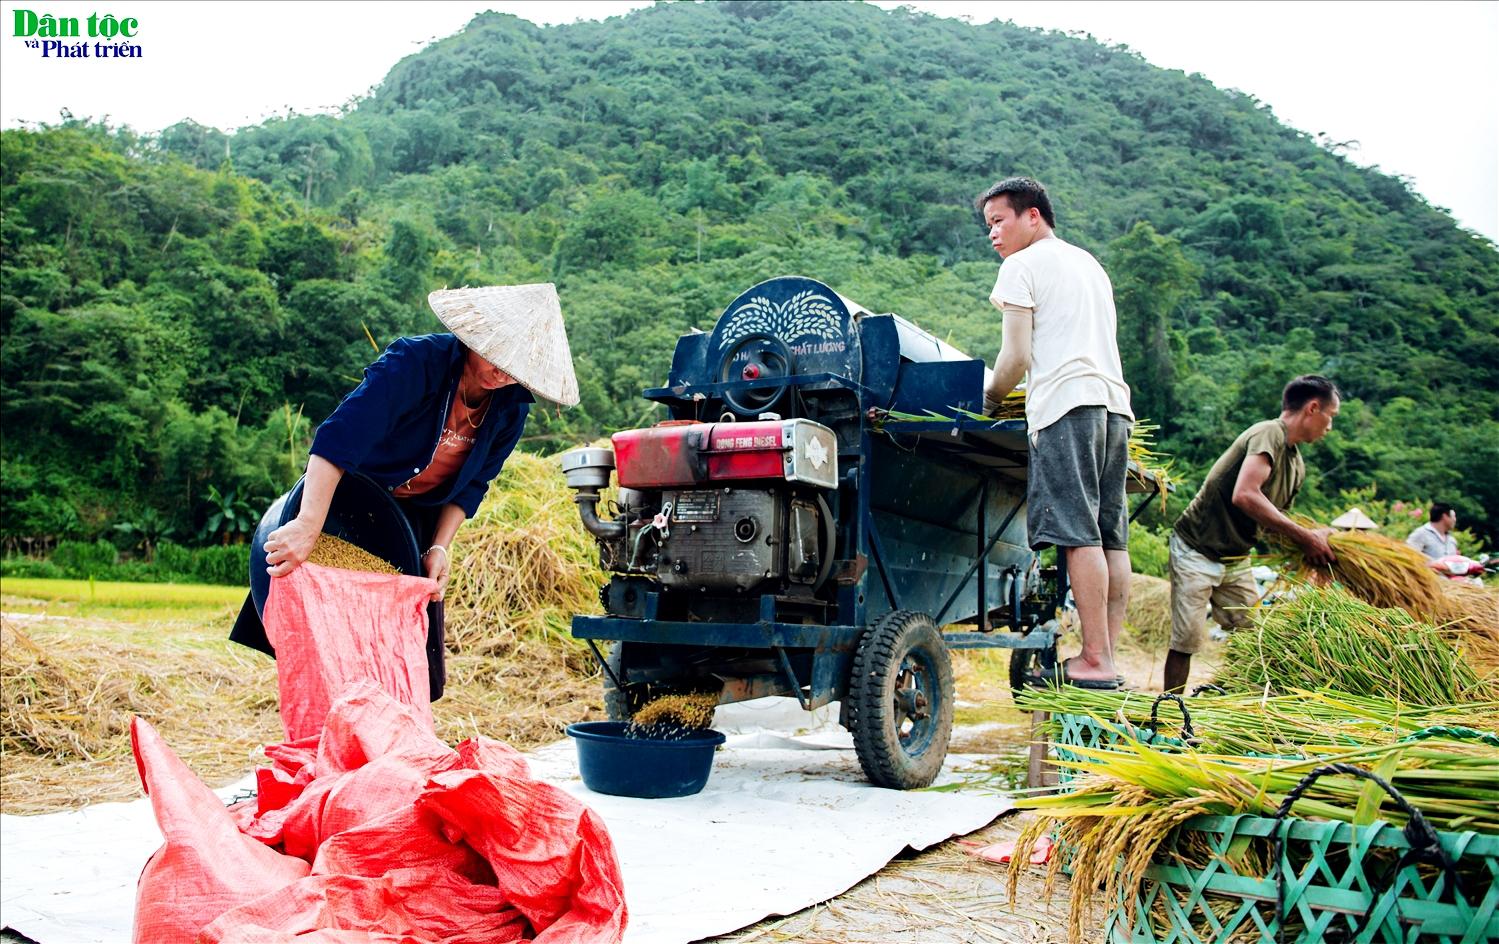 Do diện tích gieo trồng của người dân thôn Tha chỉ khoảng 10 ha nên quãng thời gian người dân thu hoạch lúa kết thúc khá nhanh chỉ trong vòng khoảng 1 tuần lễ.